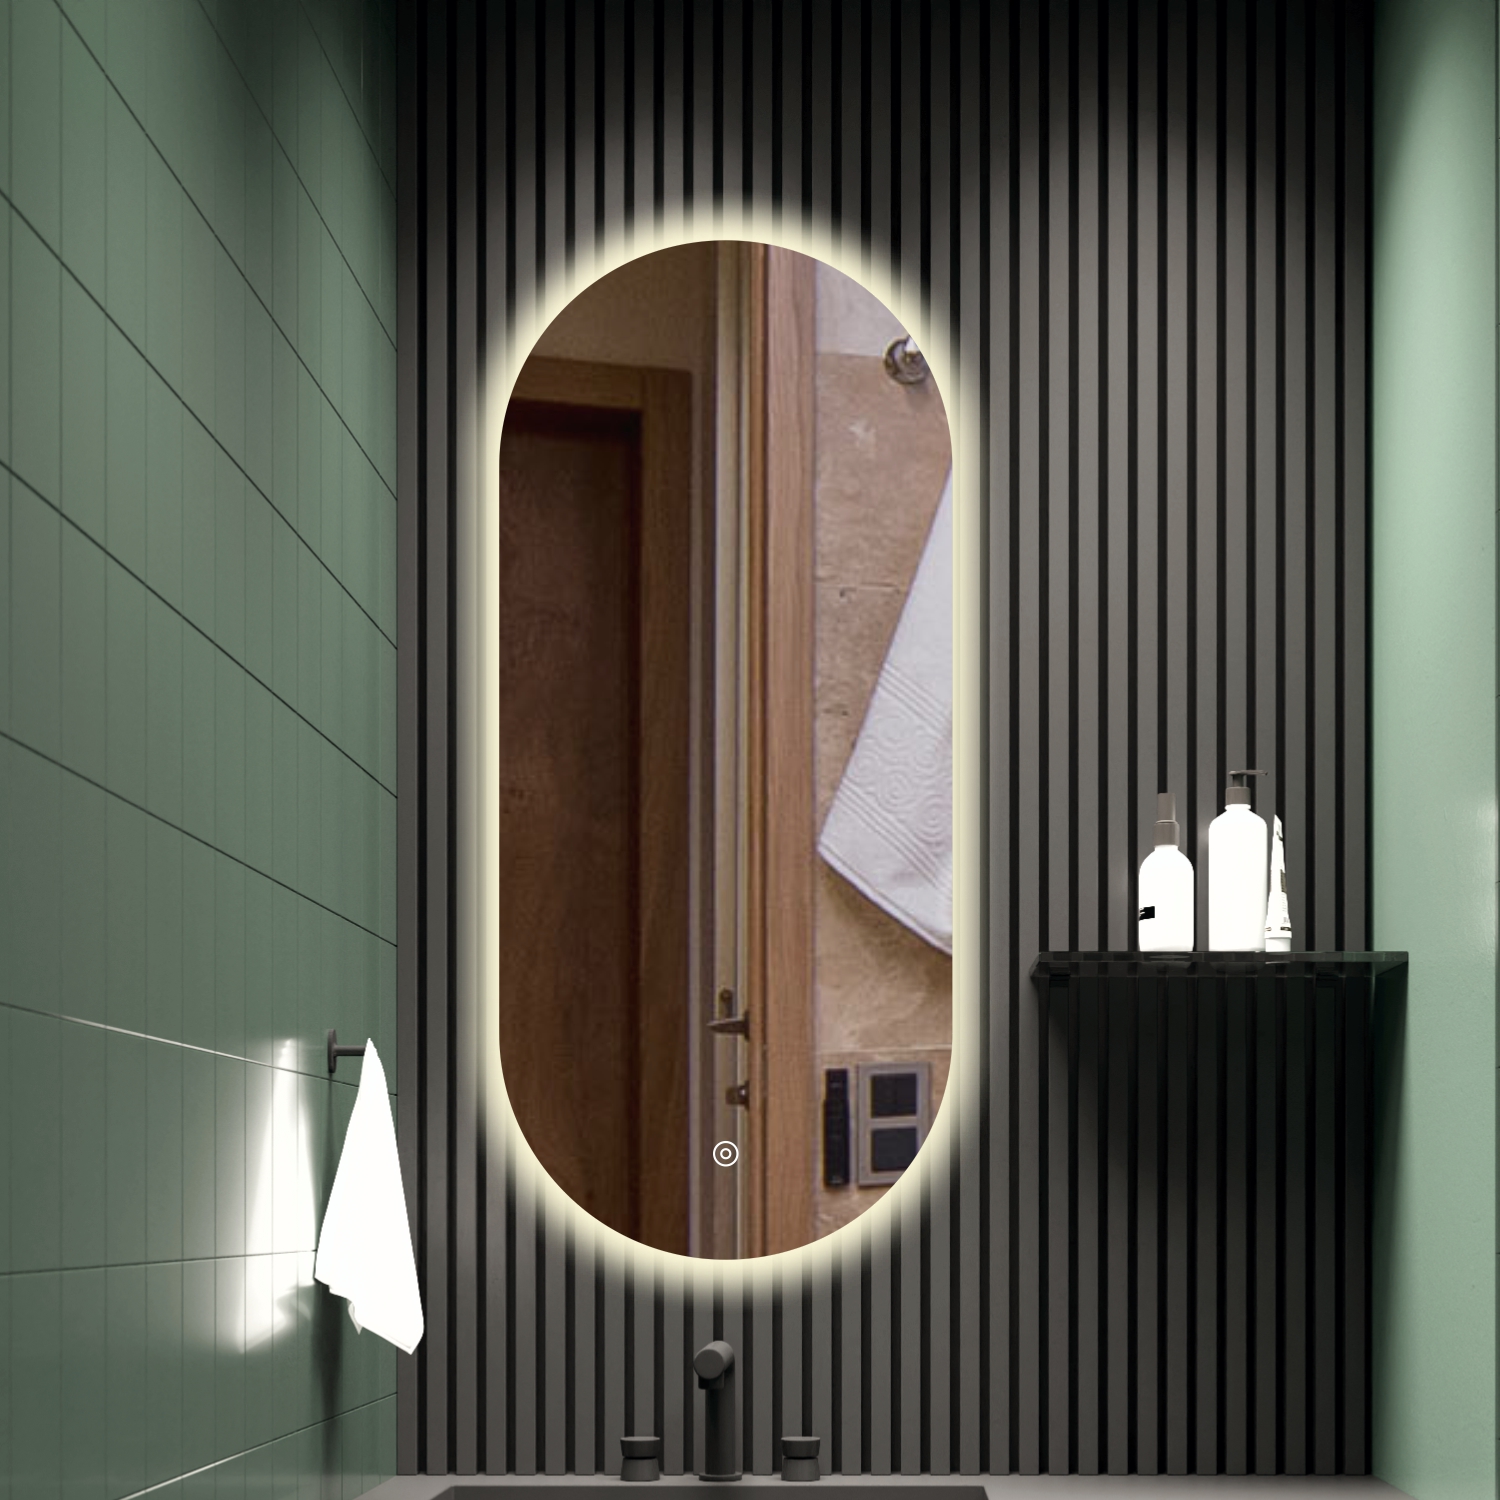 Зеркало для ванной Alfa Mirrors с дневной подсветкой 4200К овальное 40х90см, арт. AN-49d клейкая лента для крепления зеркал aviora